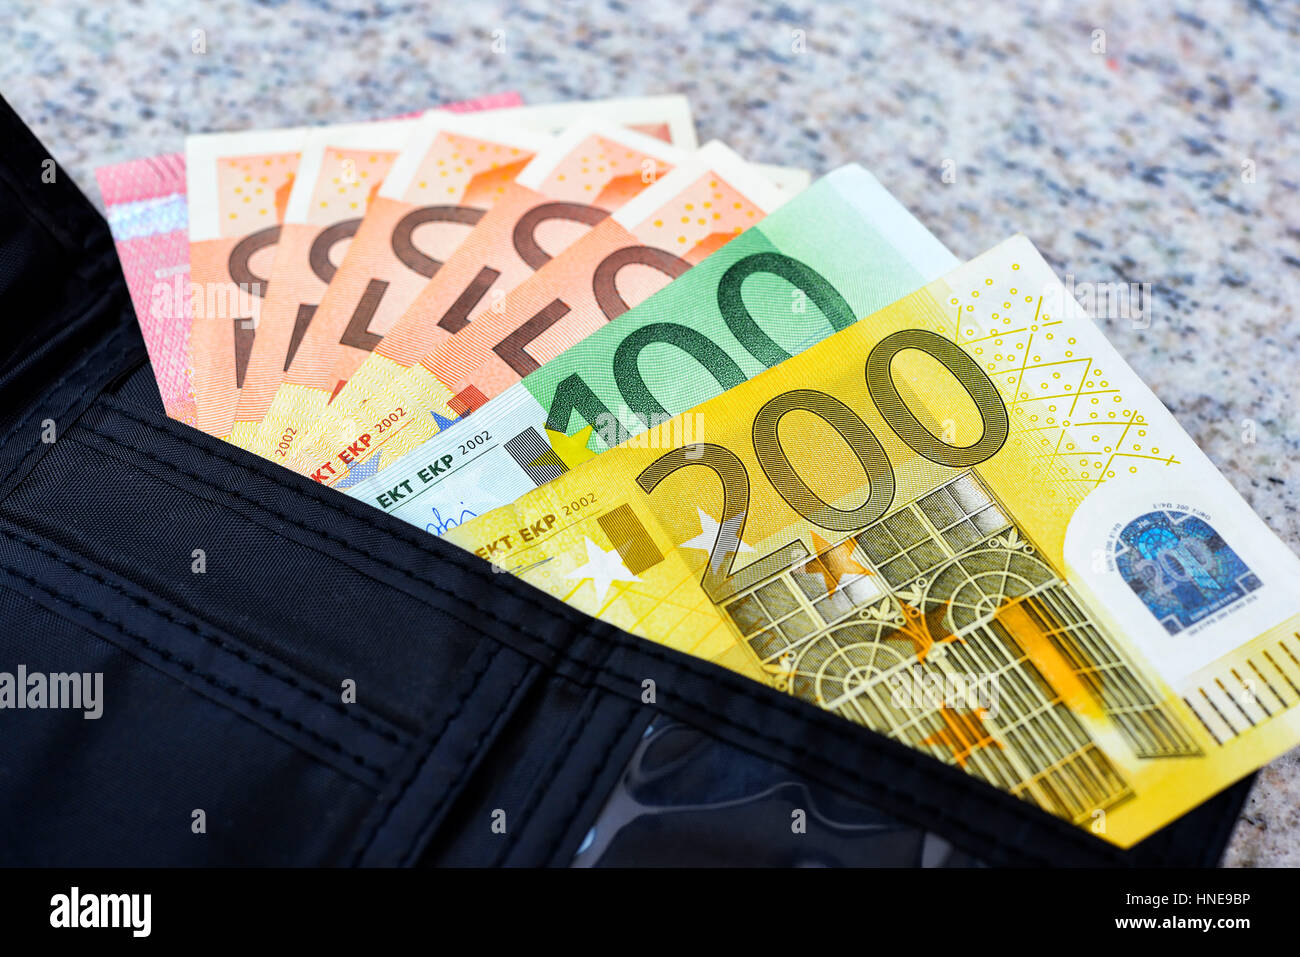 Change purse with 560 euros of basic income, Geldbörse mit 560 Euro  Grundeinkommen Stock Photo - Alamy